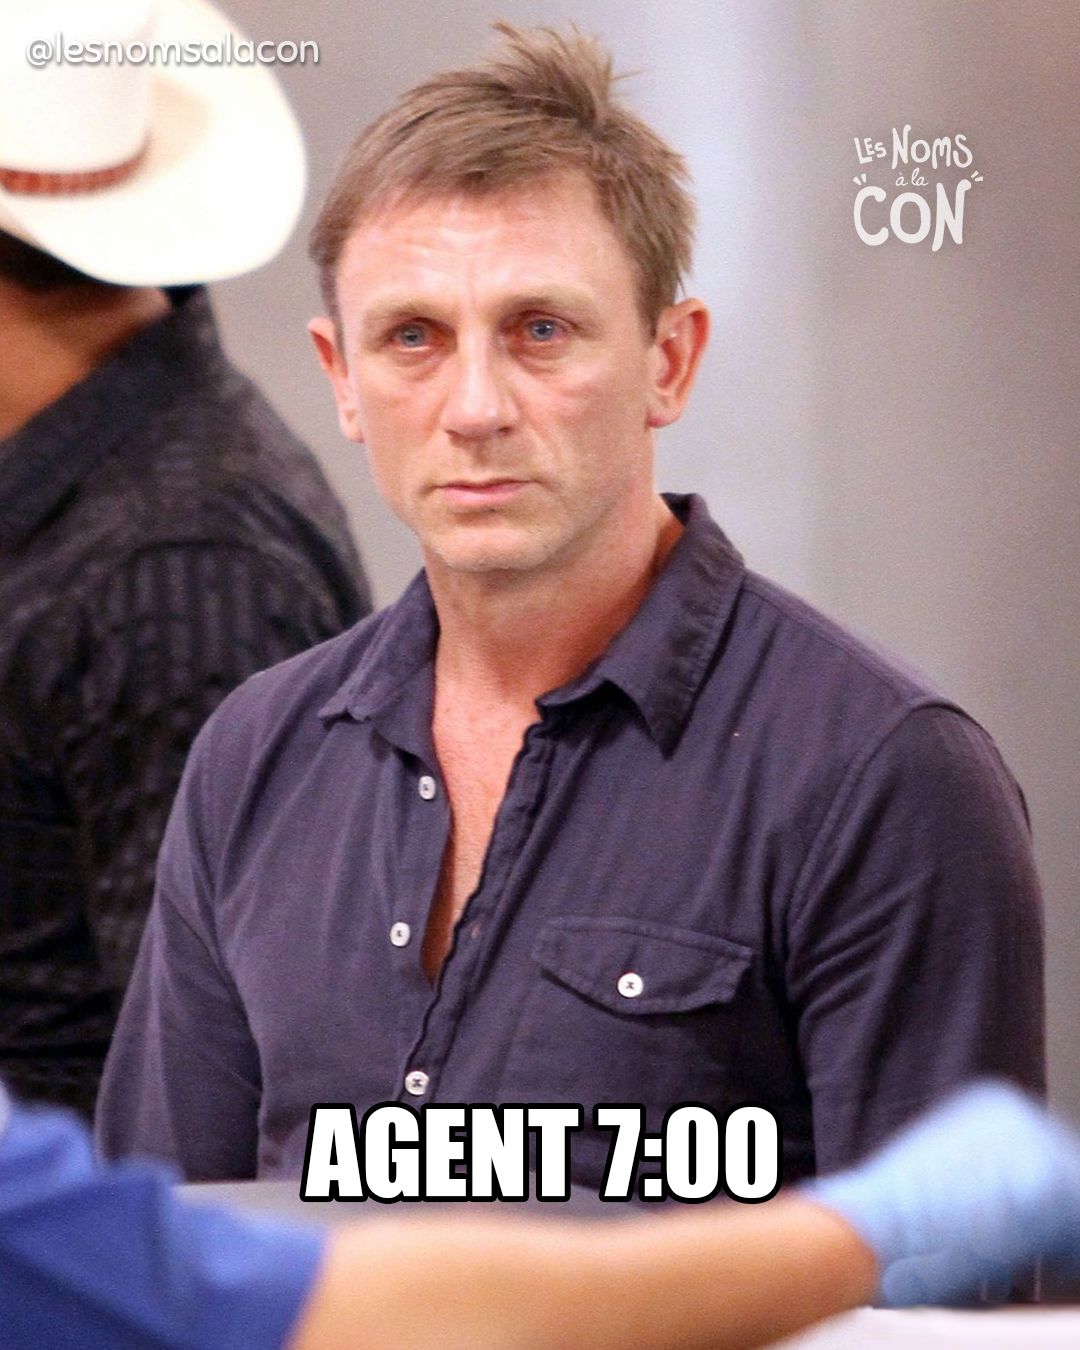 Agent 7:00